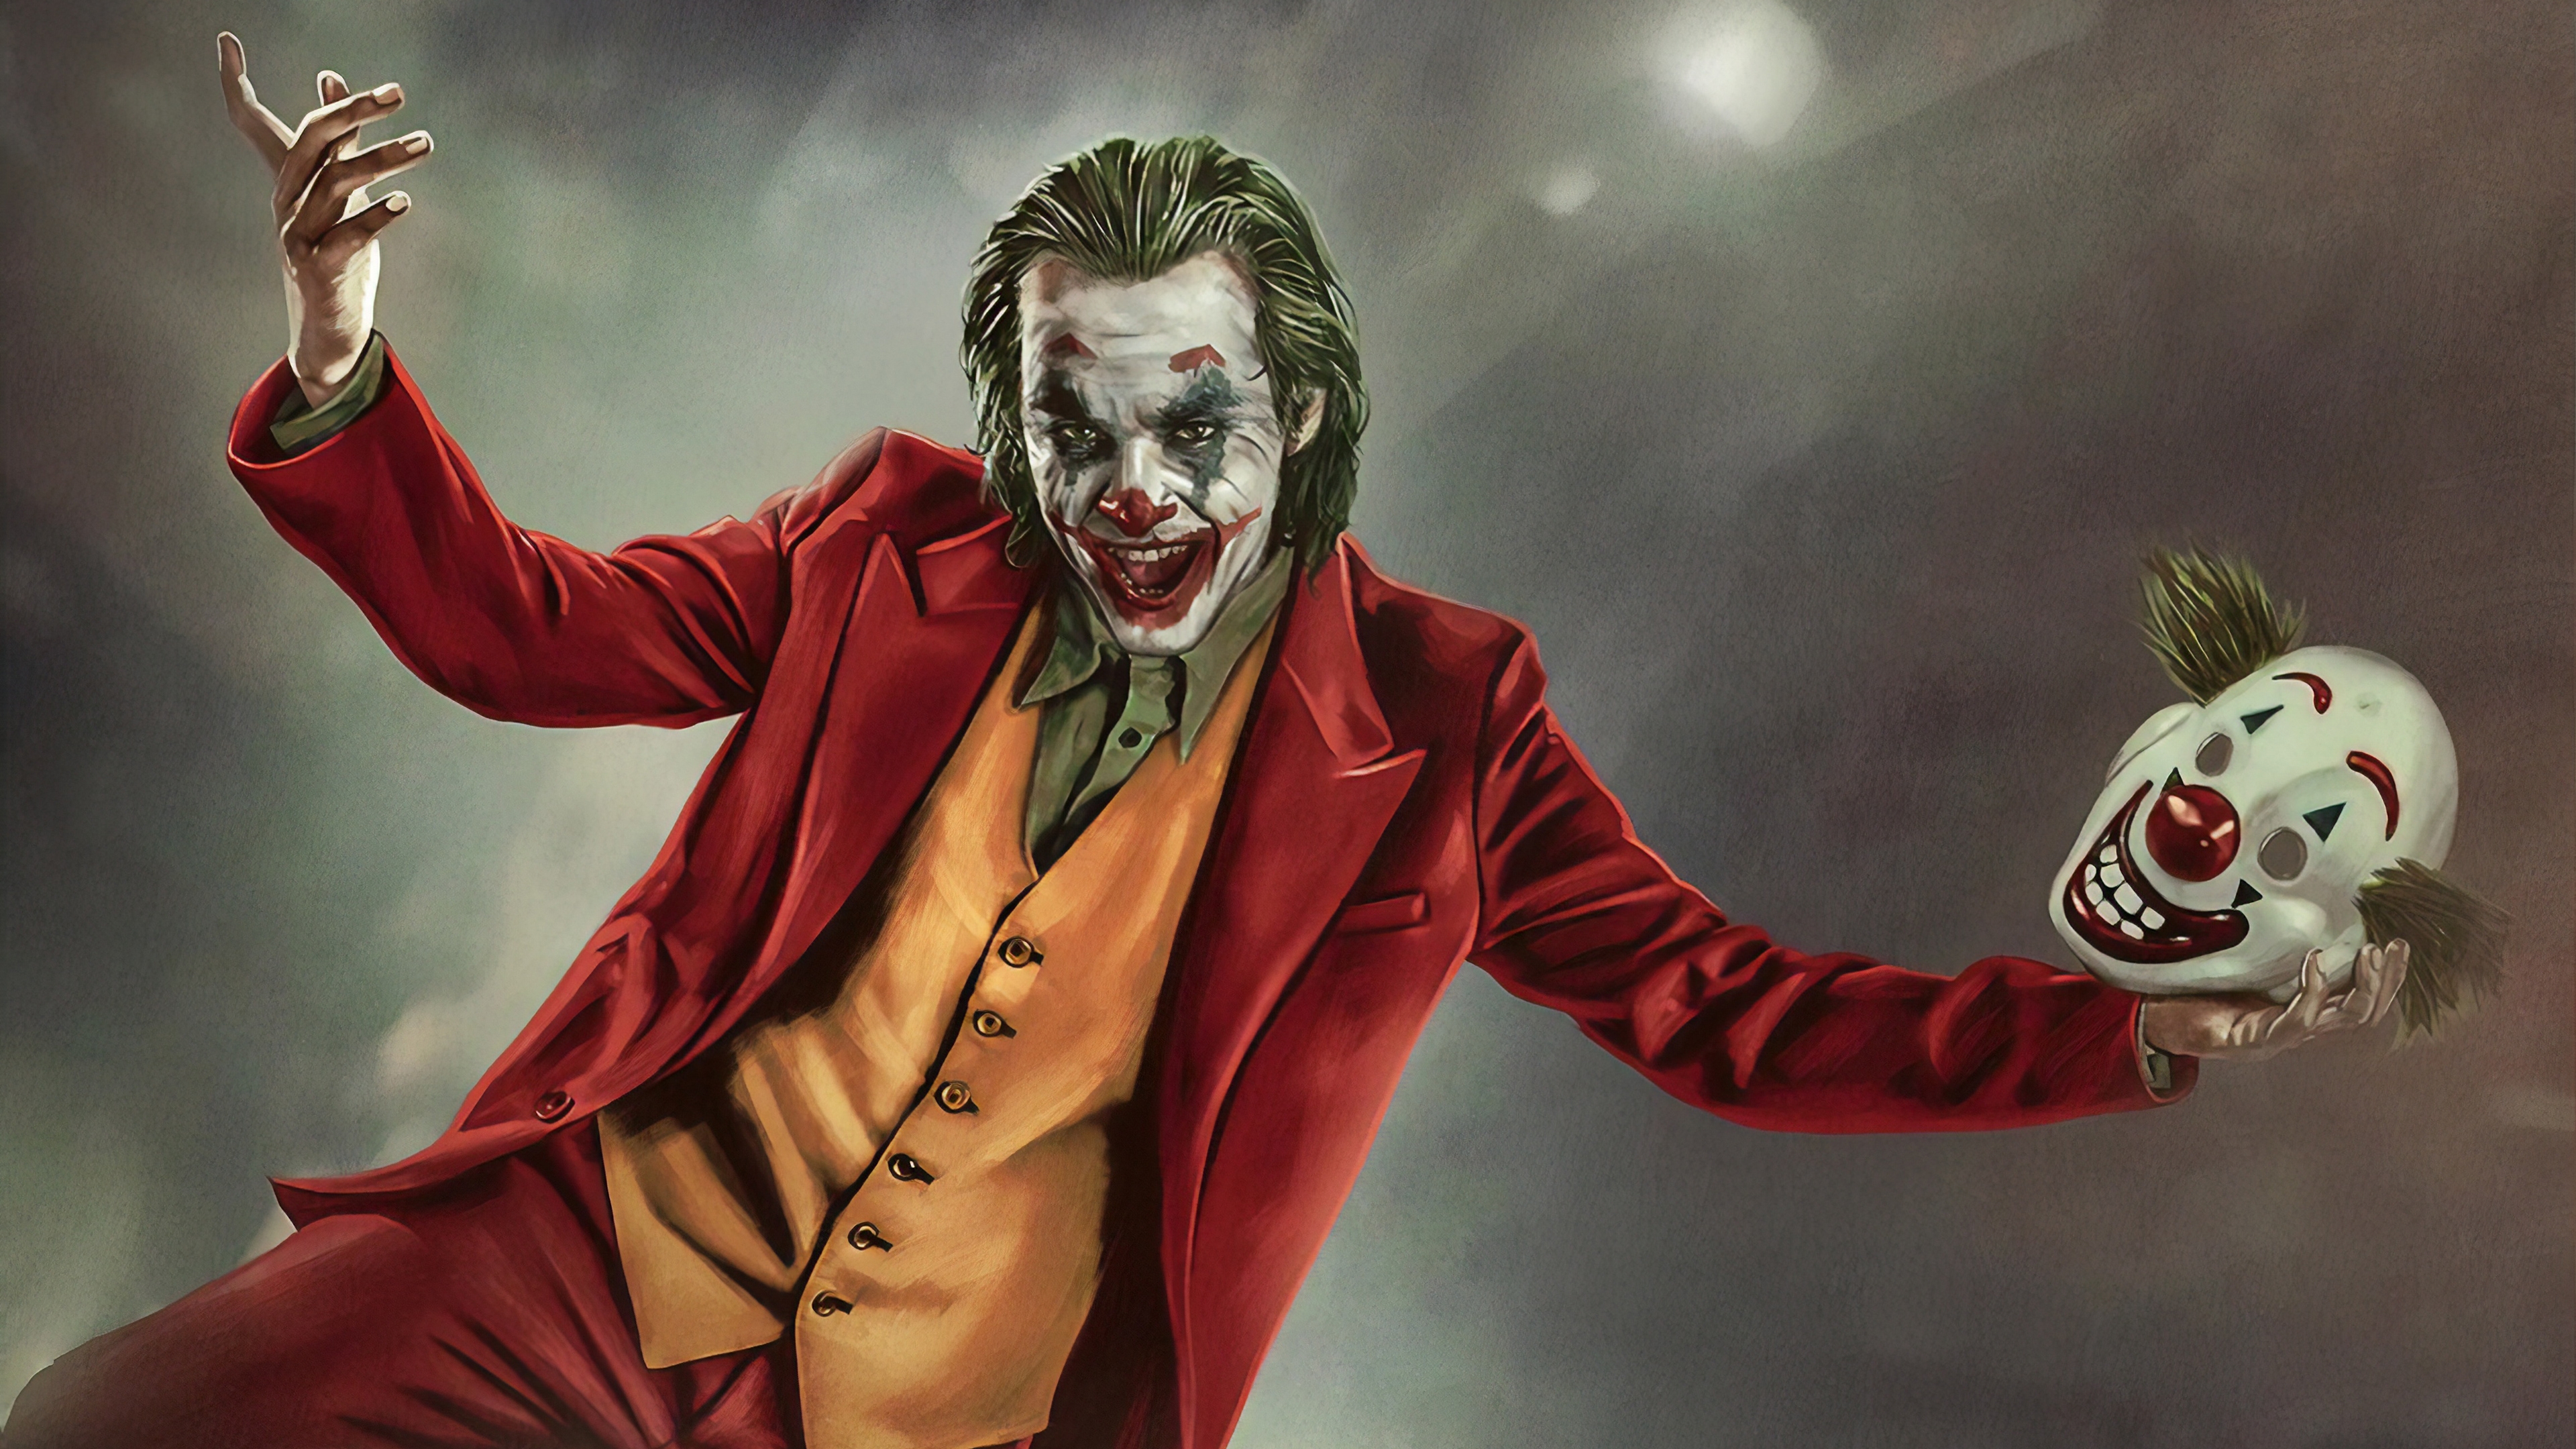 Joker 2019, Artwork, Mask, Smiling - HD Wallpaper 